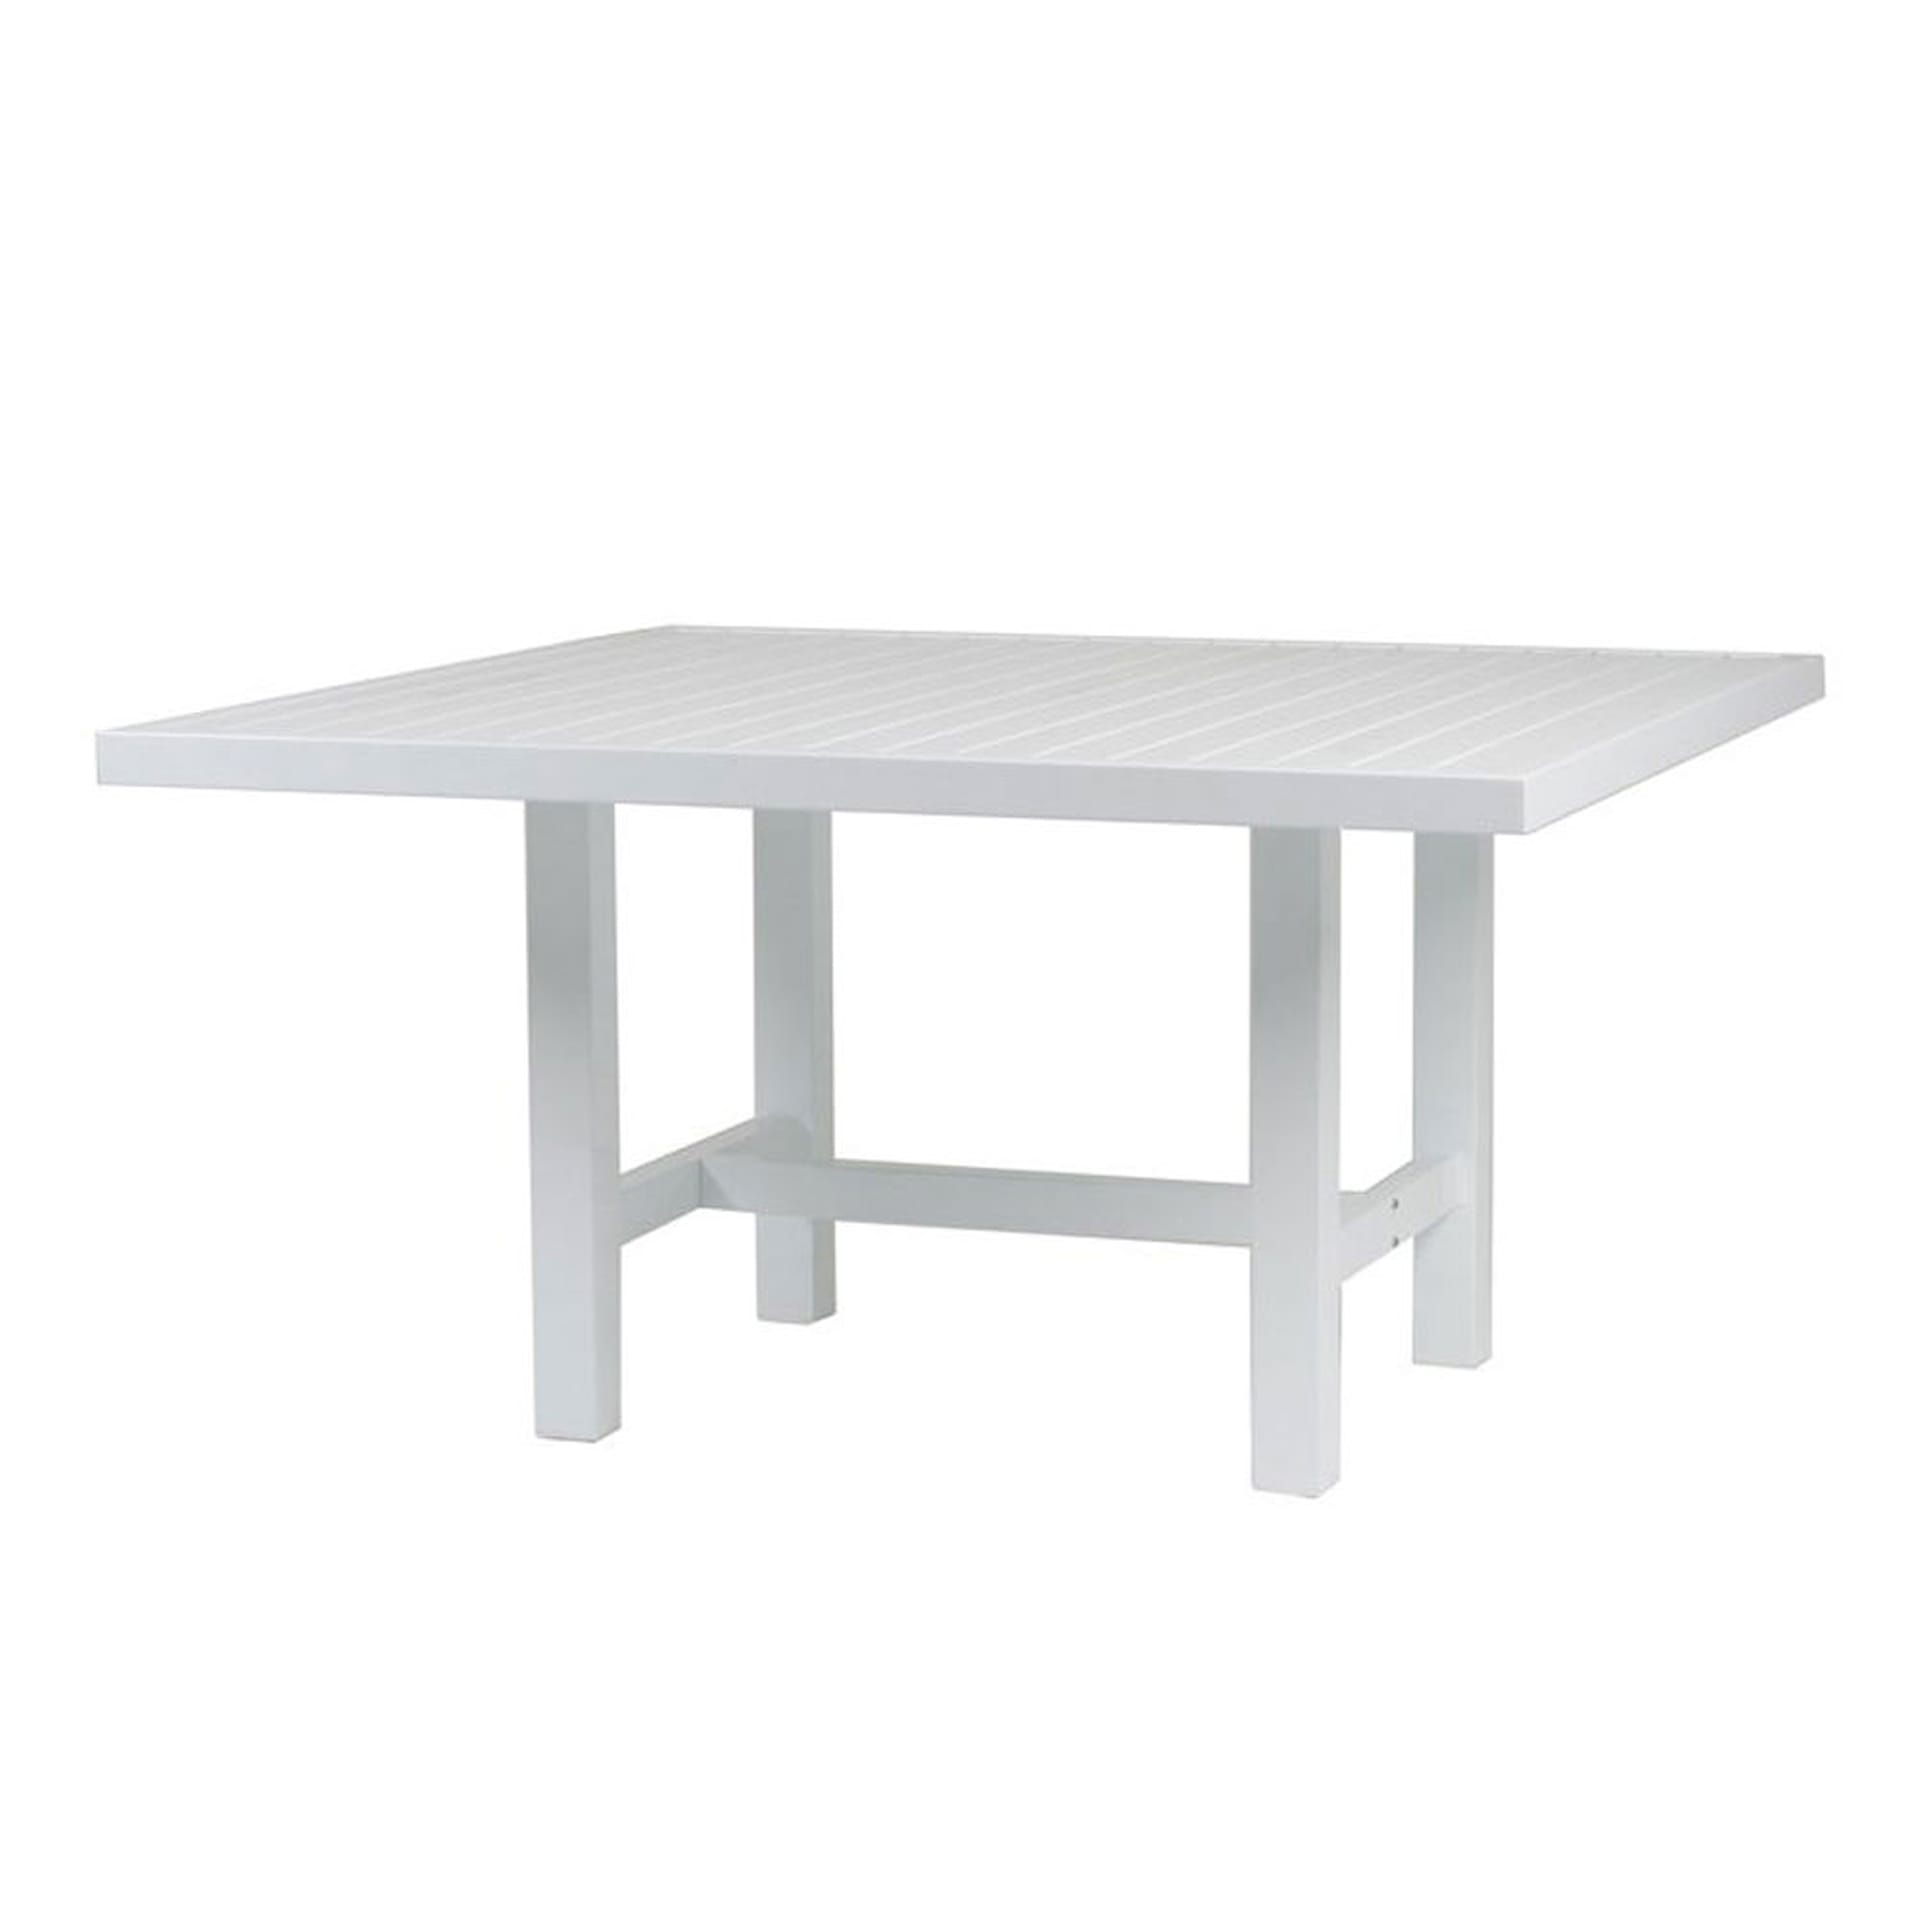 Table 124x122 cm - Fri Form - NO GA